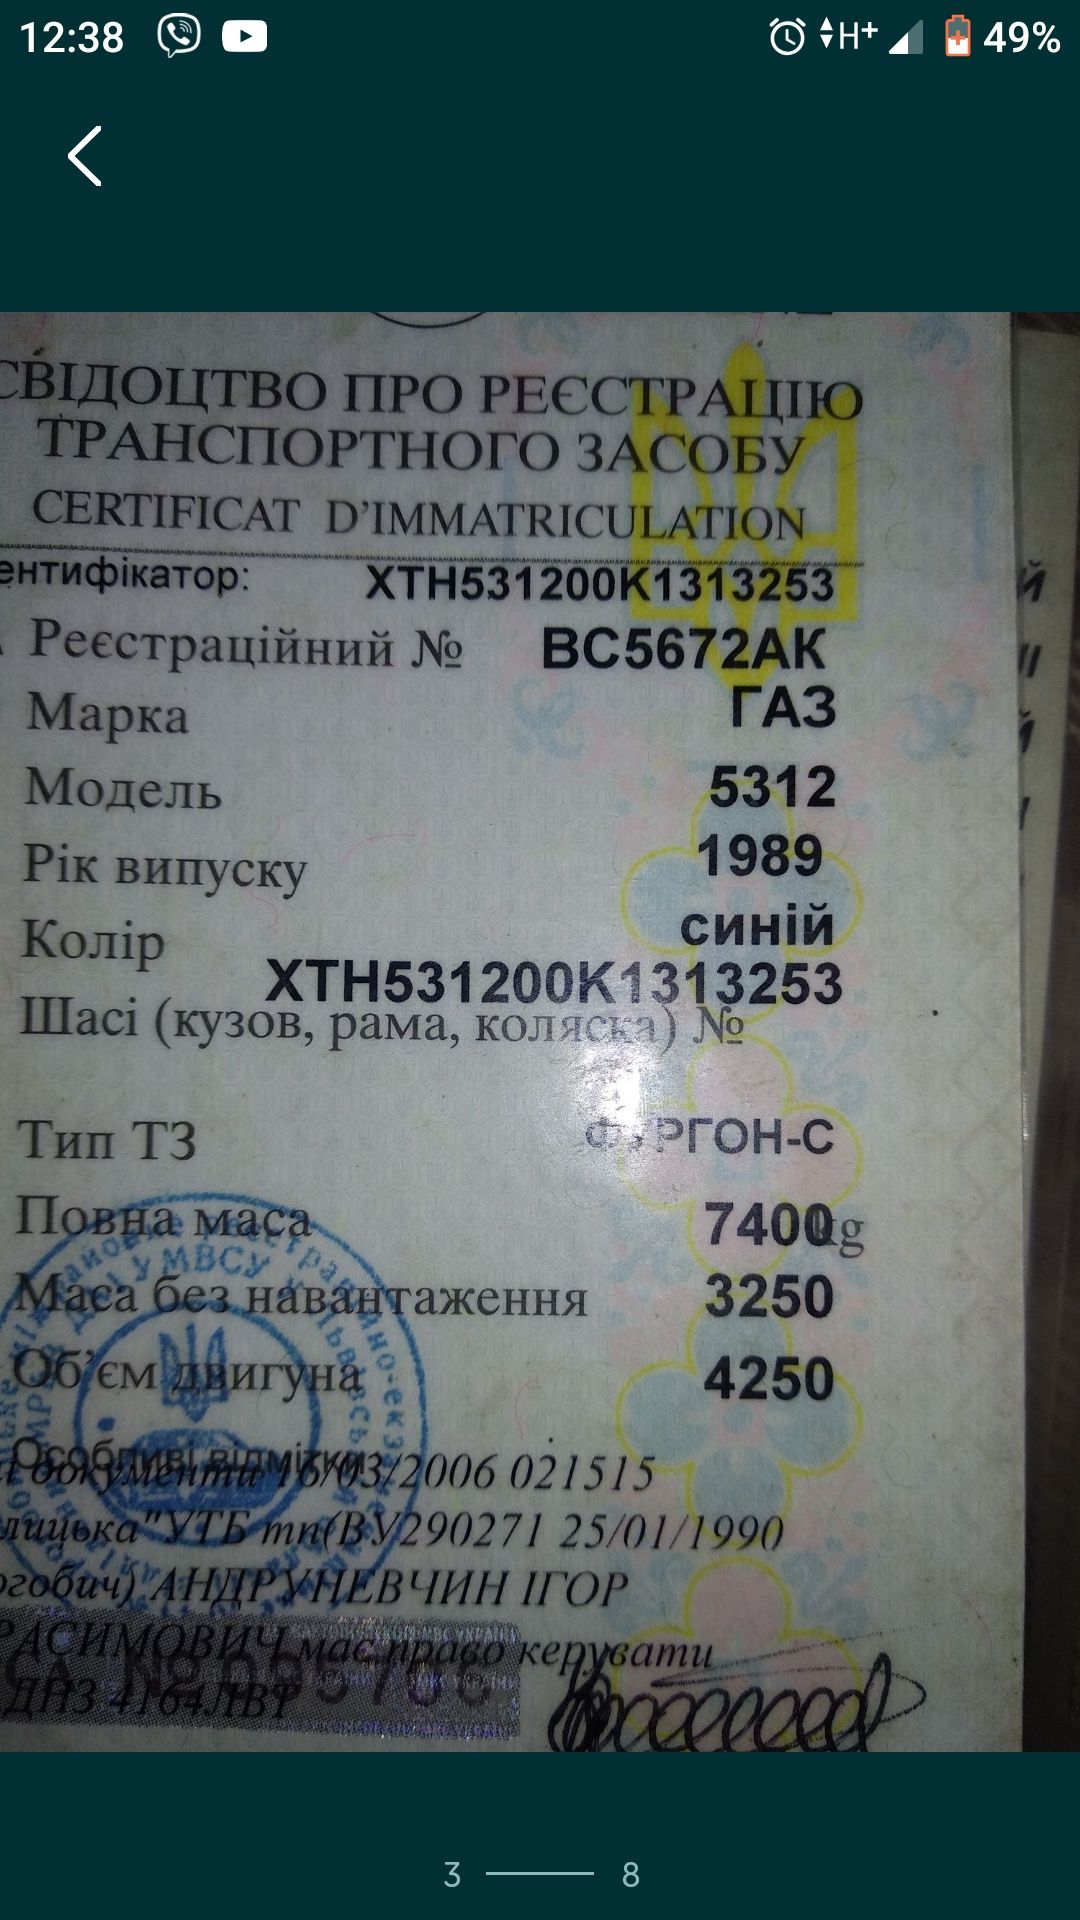 Кабіна ГАЗ 5312 з документами і номерними знаками.